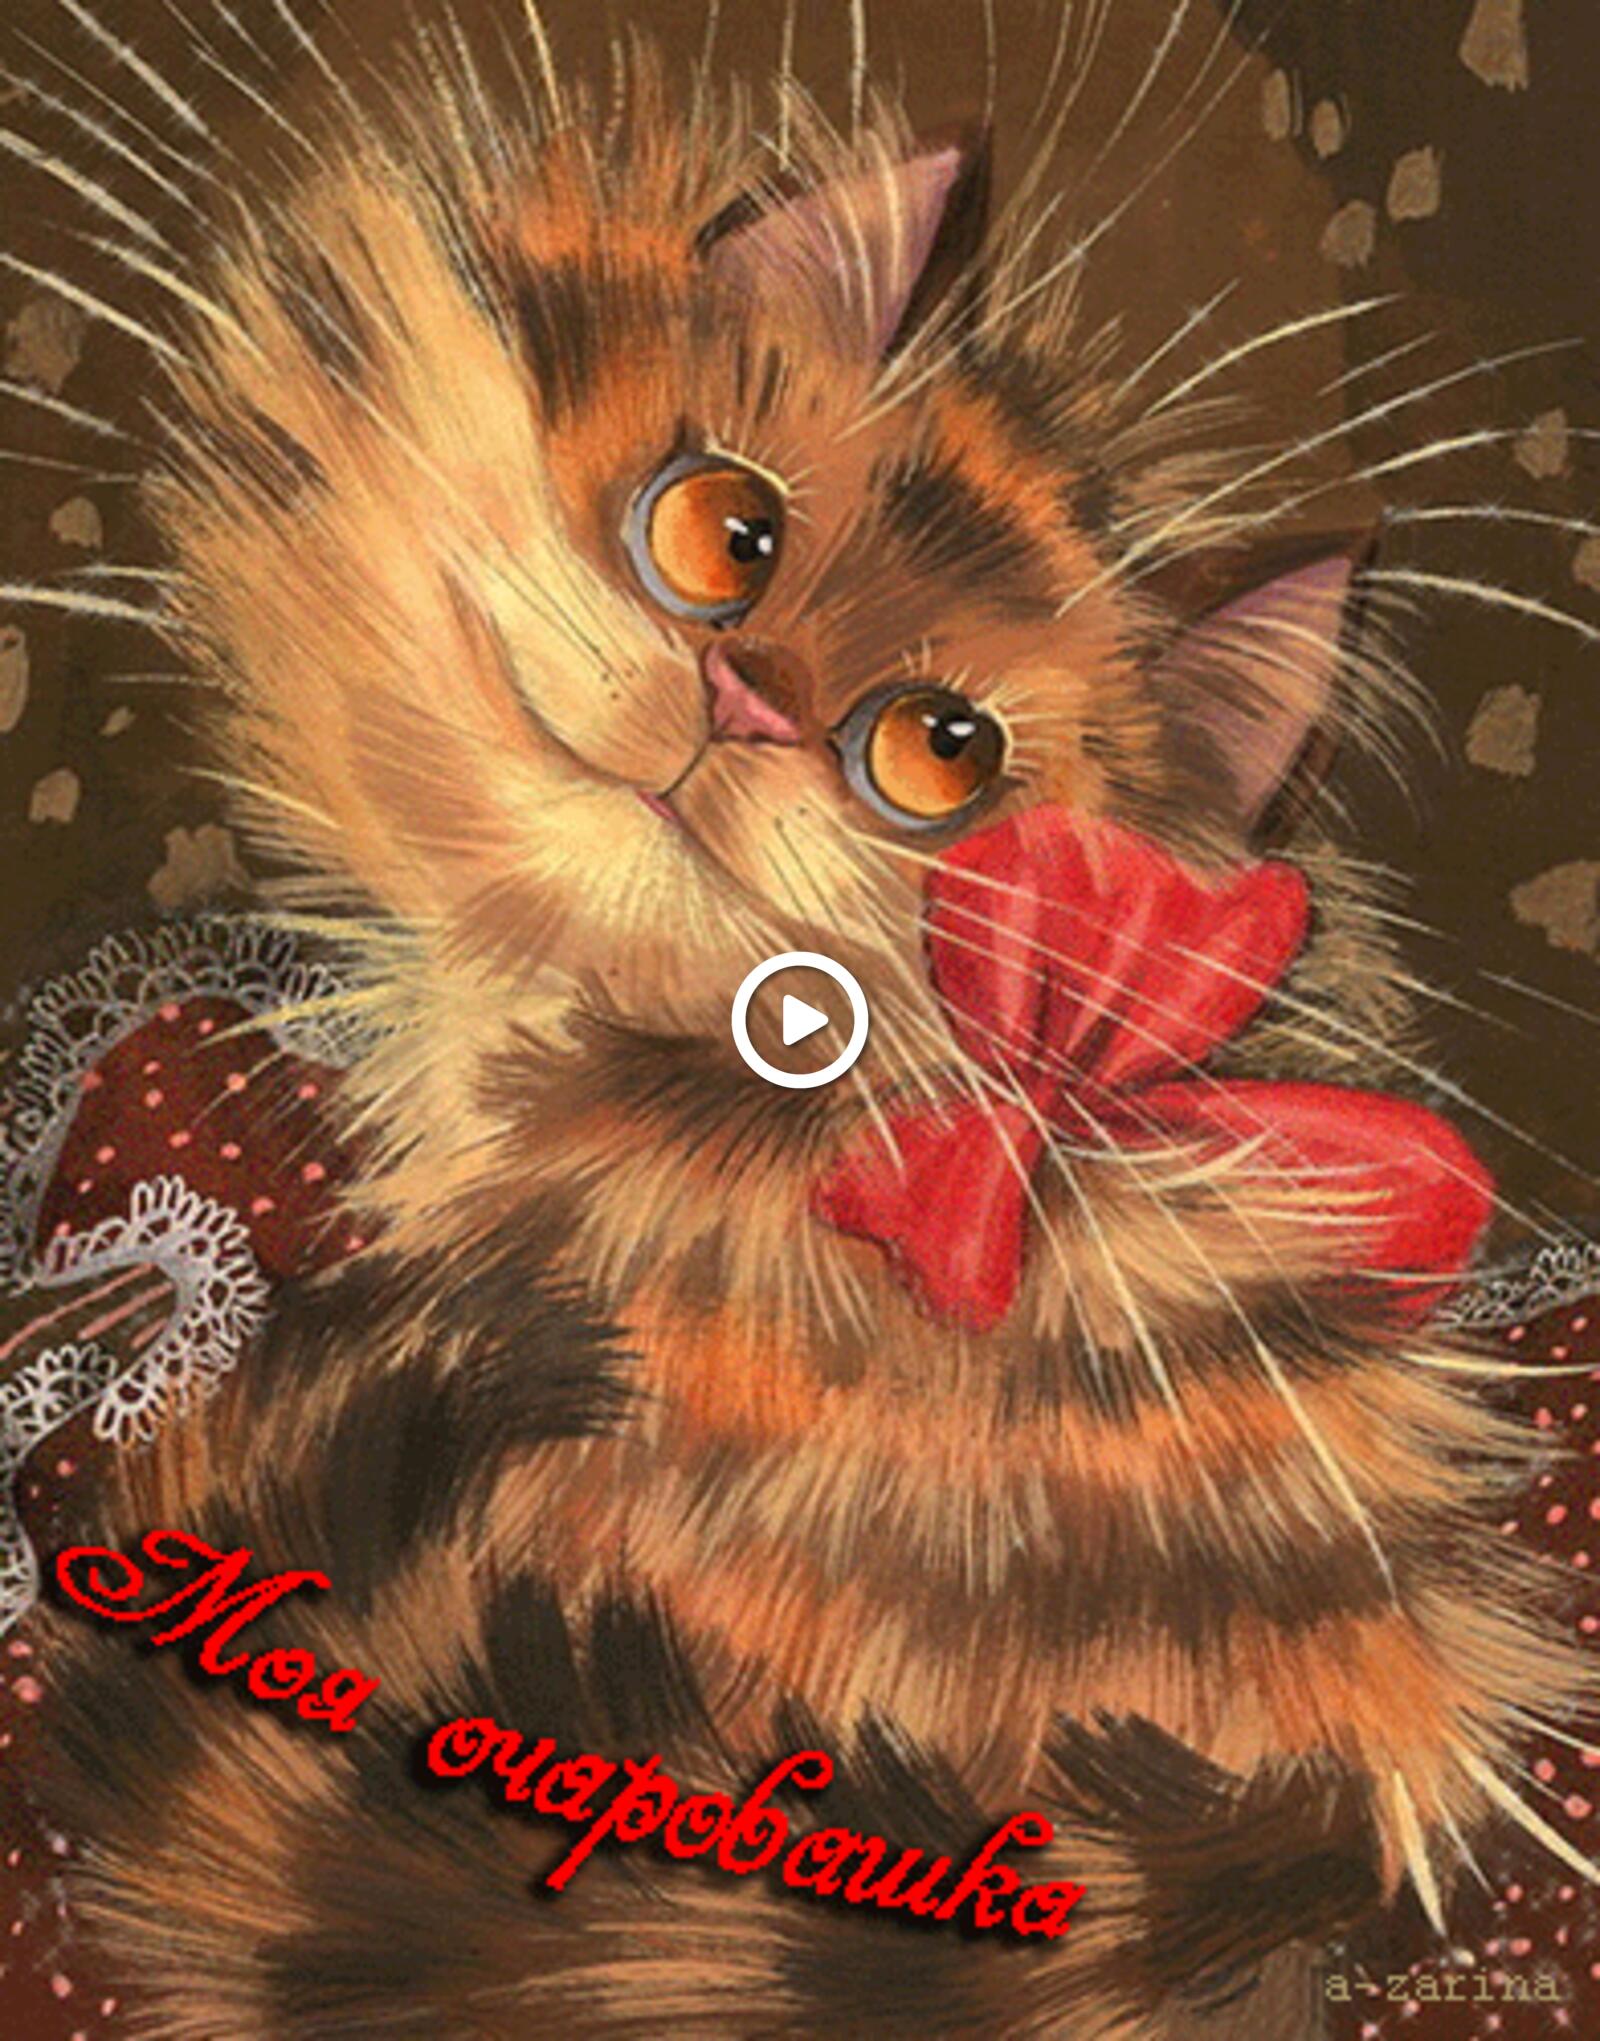 一张以矿井 可爱的 猫为主题的明信片